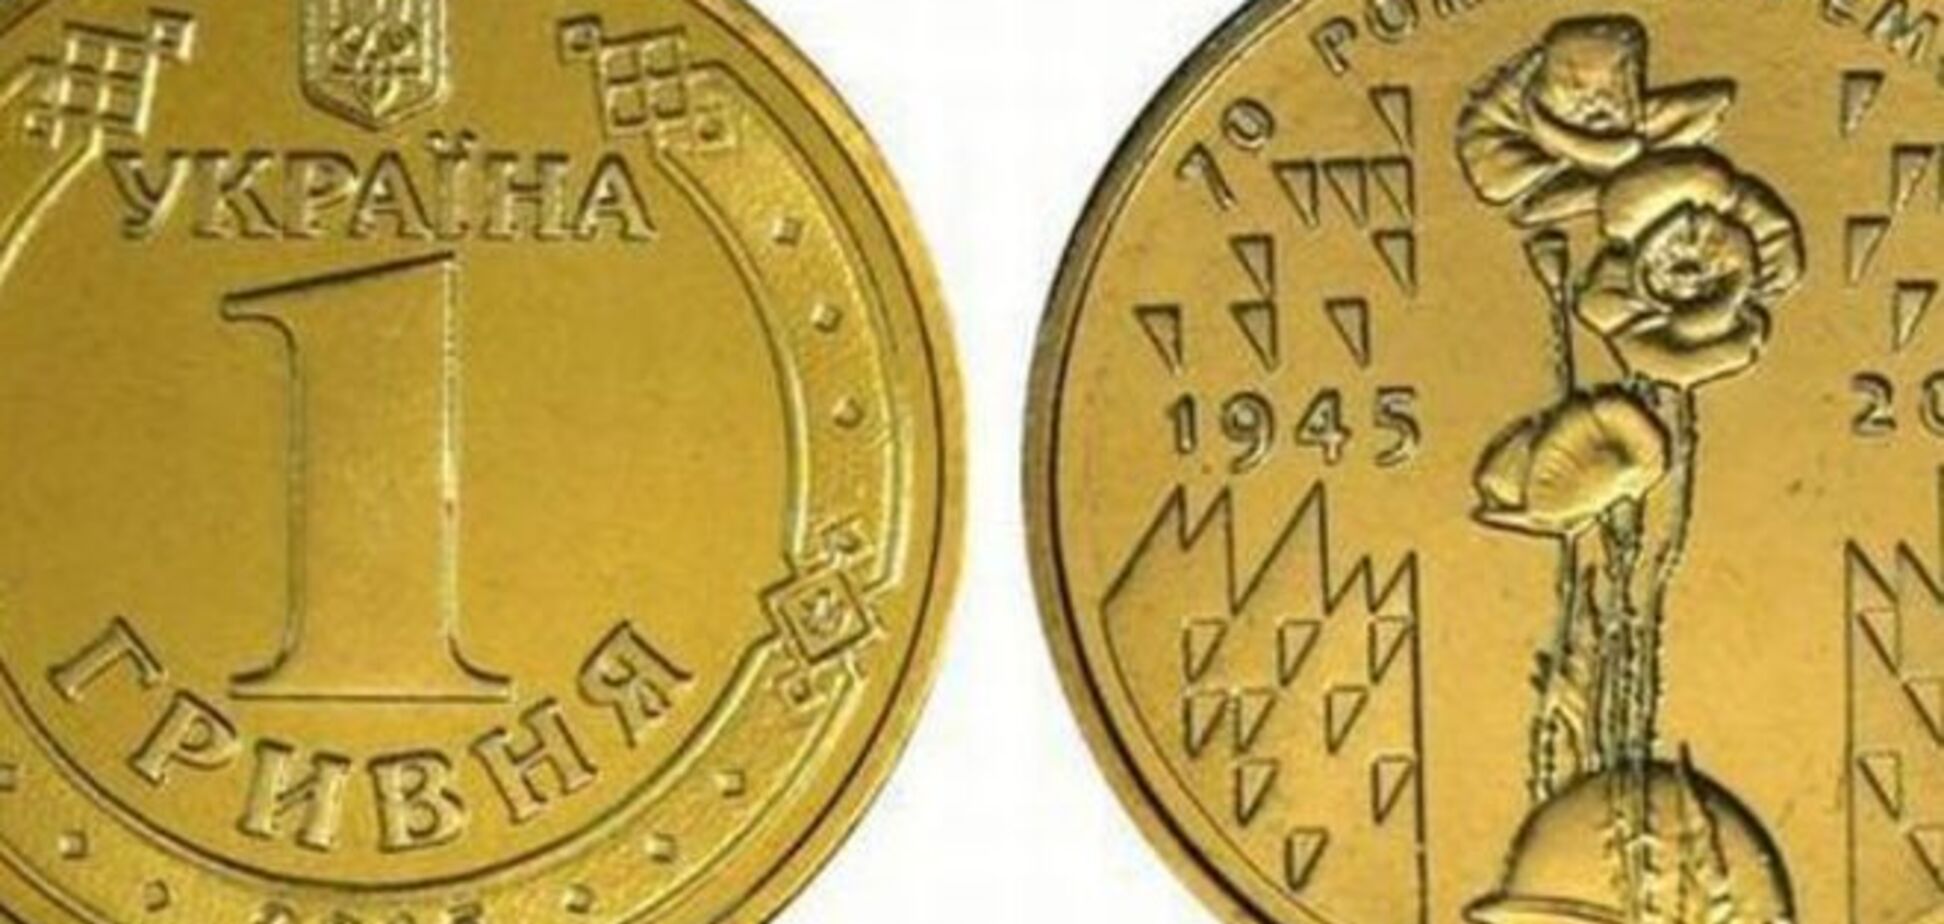 НБУ выпустил 7 млн гривневых монет в честь 70-летия Победы над фашизмом